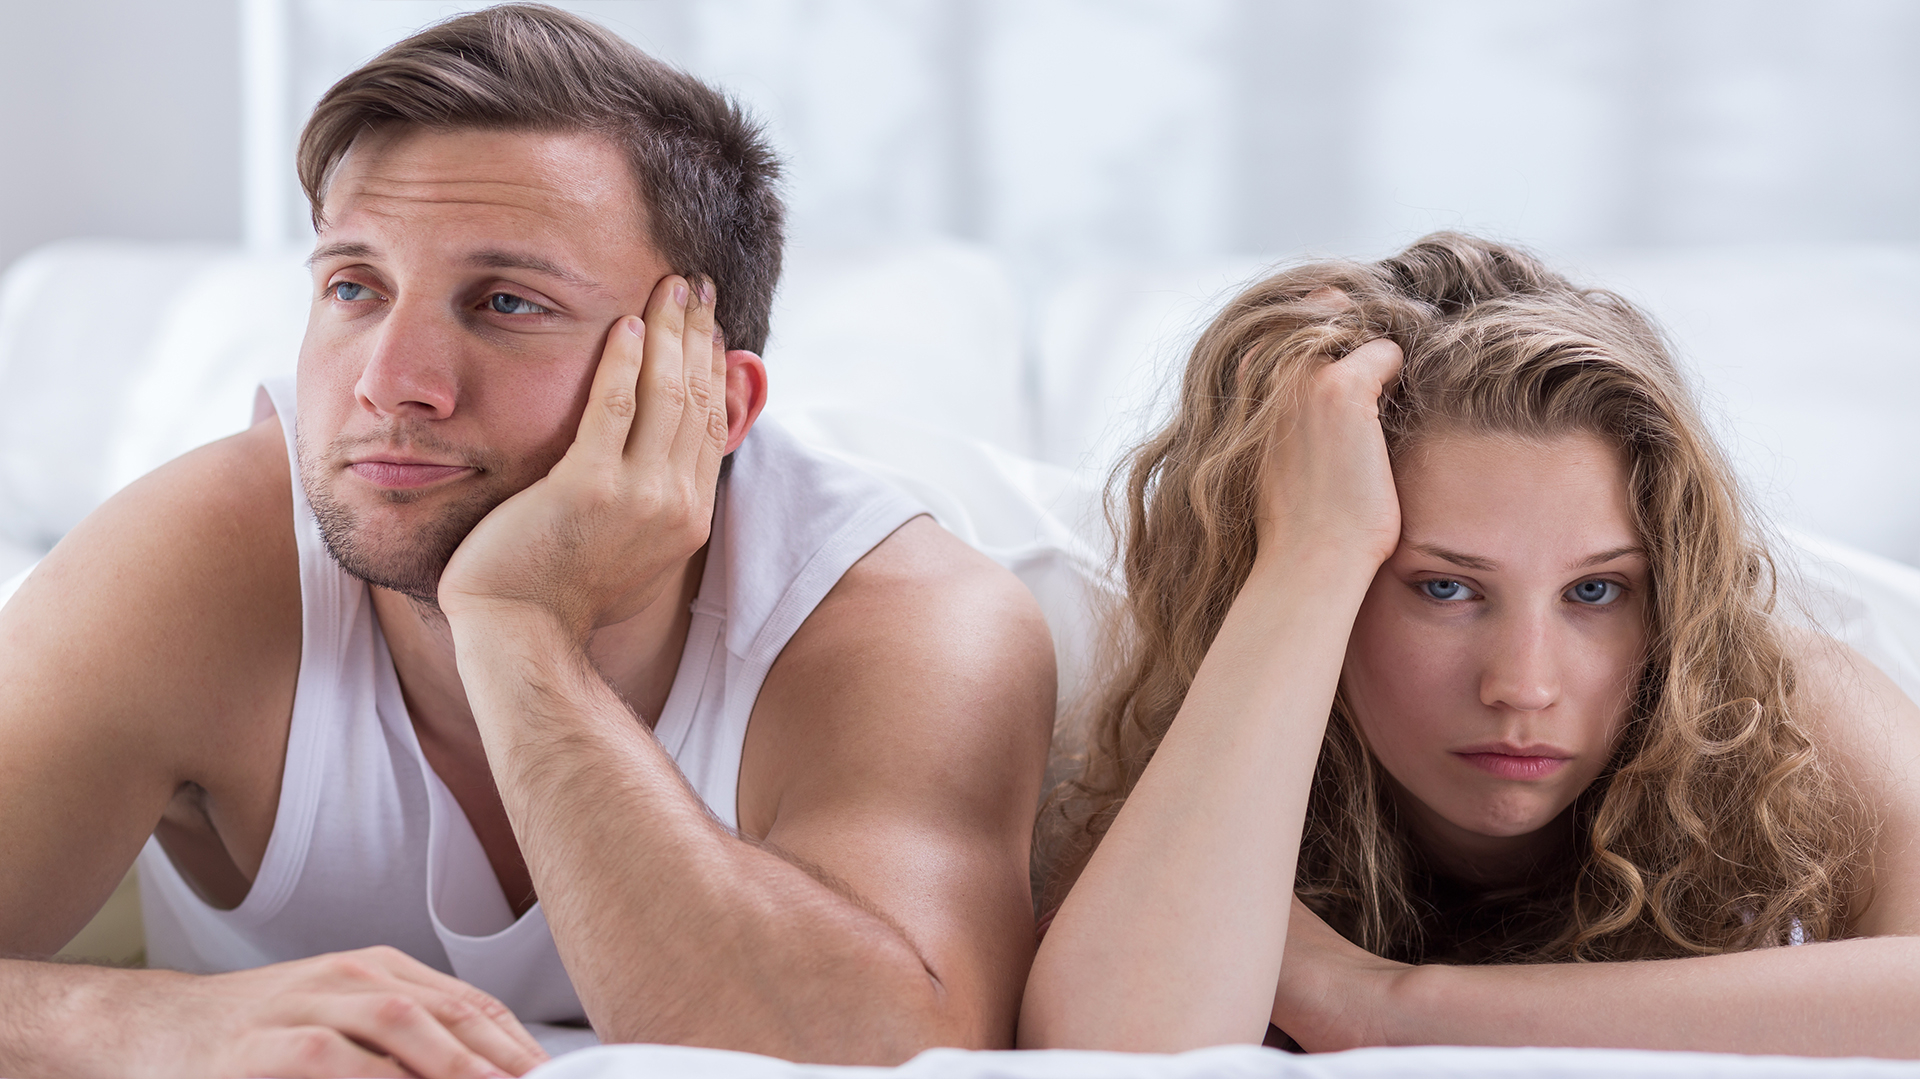 El estrés está relacionado con una disminución del deseo sexual, dificultades para alcanzar y sostener la excitación, y un reporte de menor satisfacción durante la actividad sexual (IStock)
